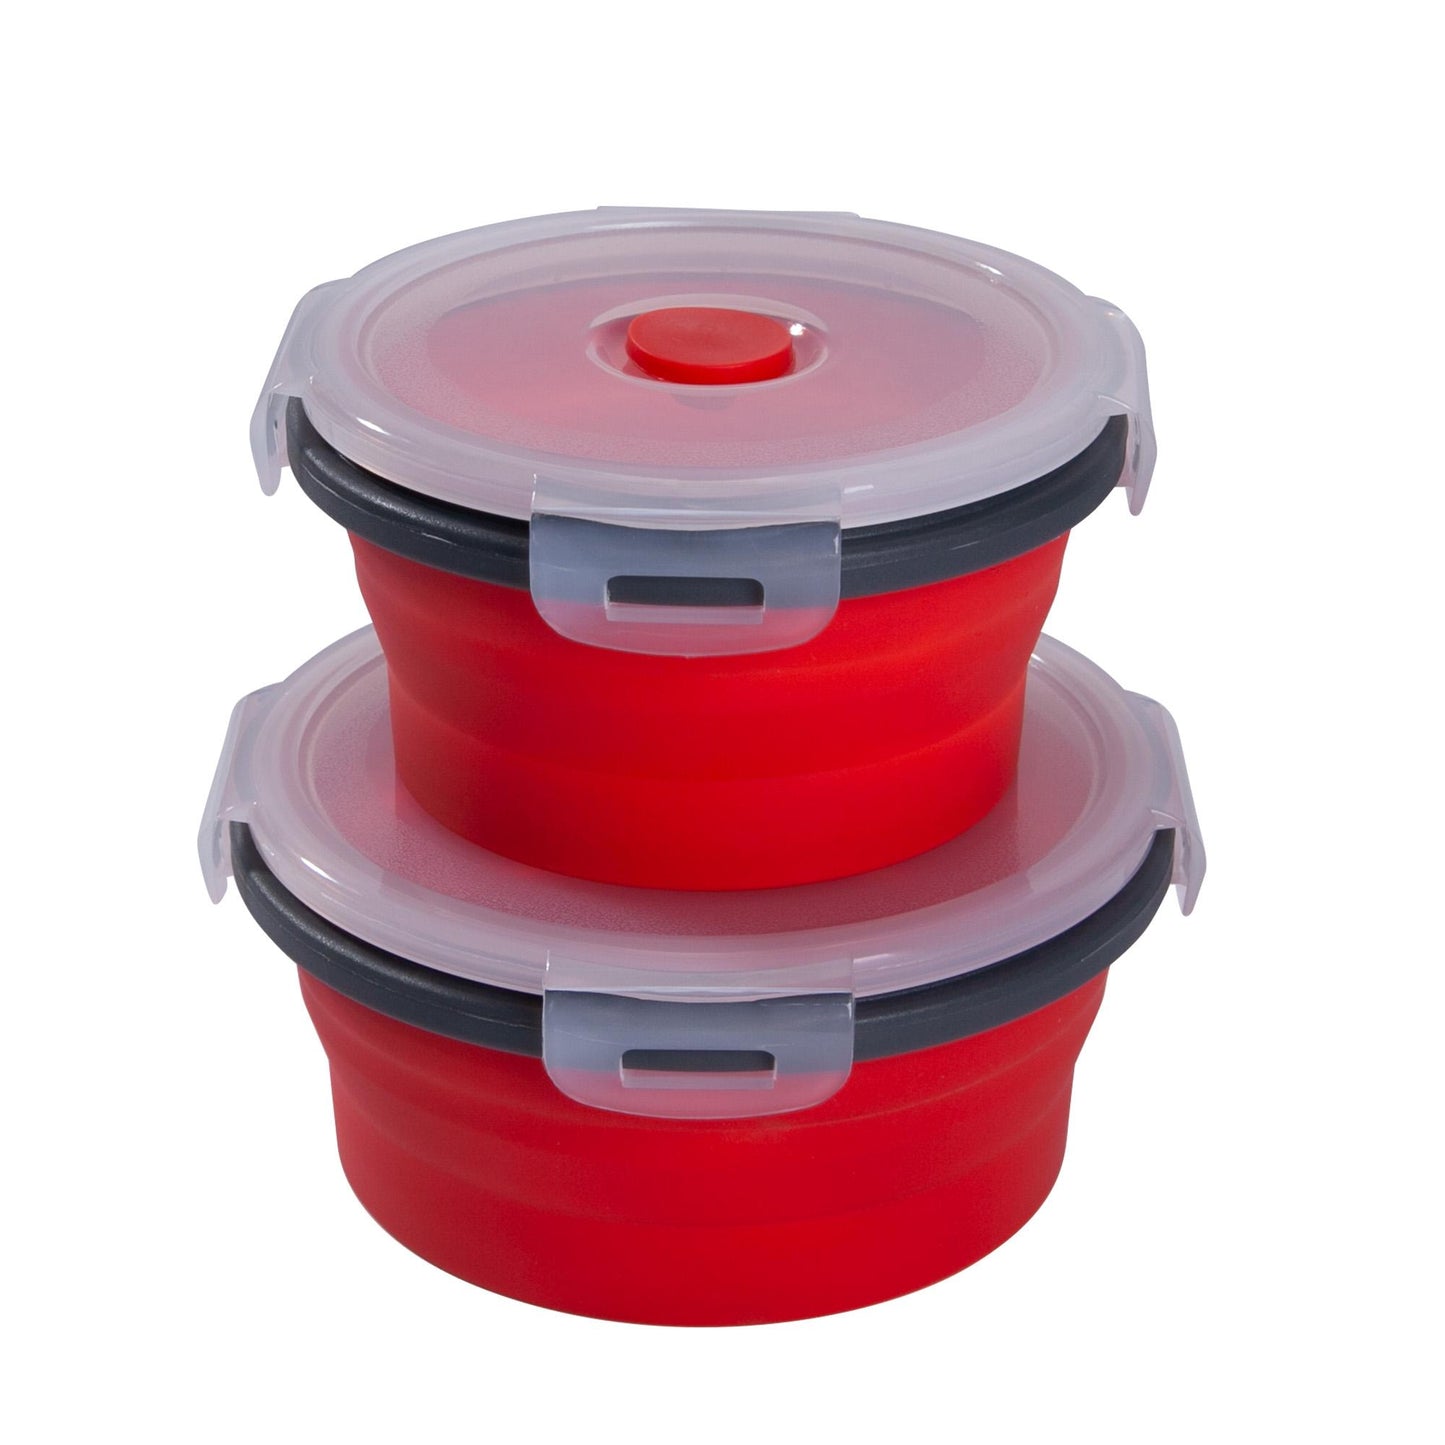 MixCover opvouwbare frislocks ingesteld met deksel gemaakt van siliconen bentobox lunchbox lunchbox picnick camping kom bpa-vrije ruimte besparen 250 ml 500 ml rood